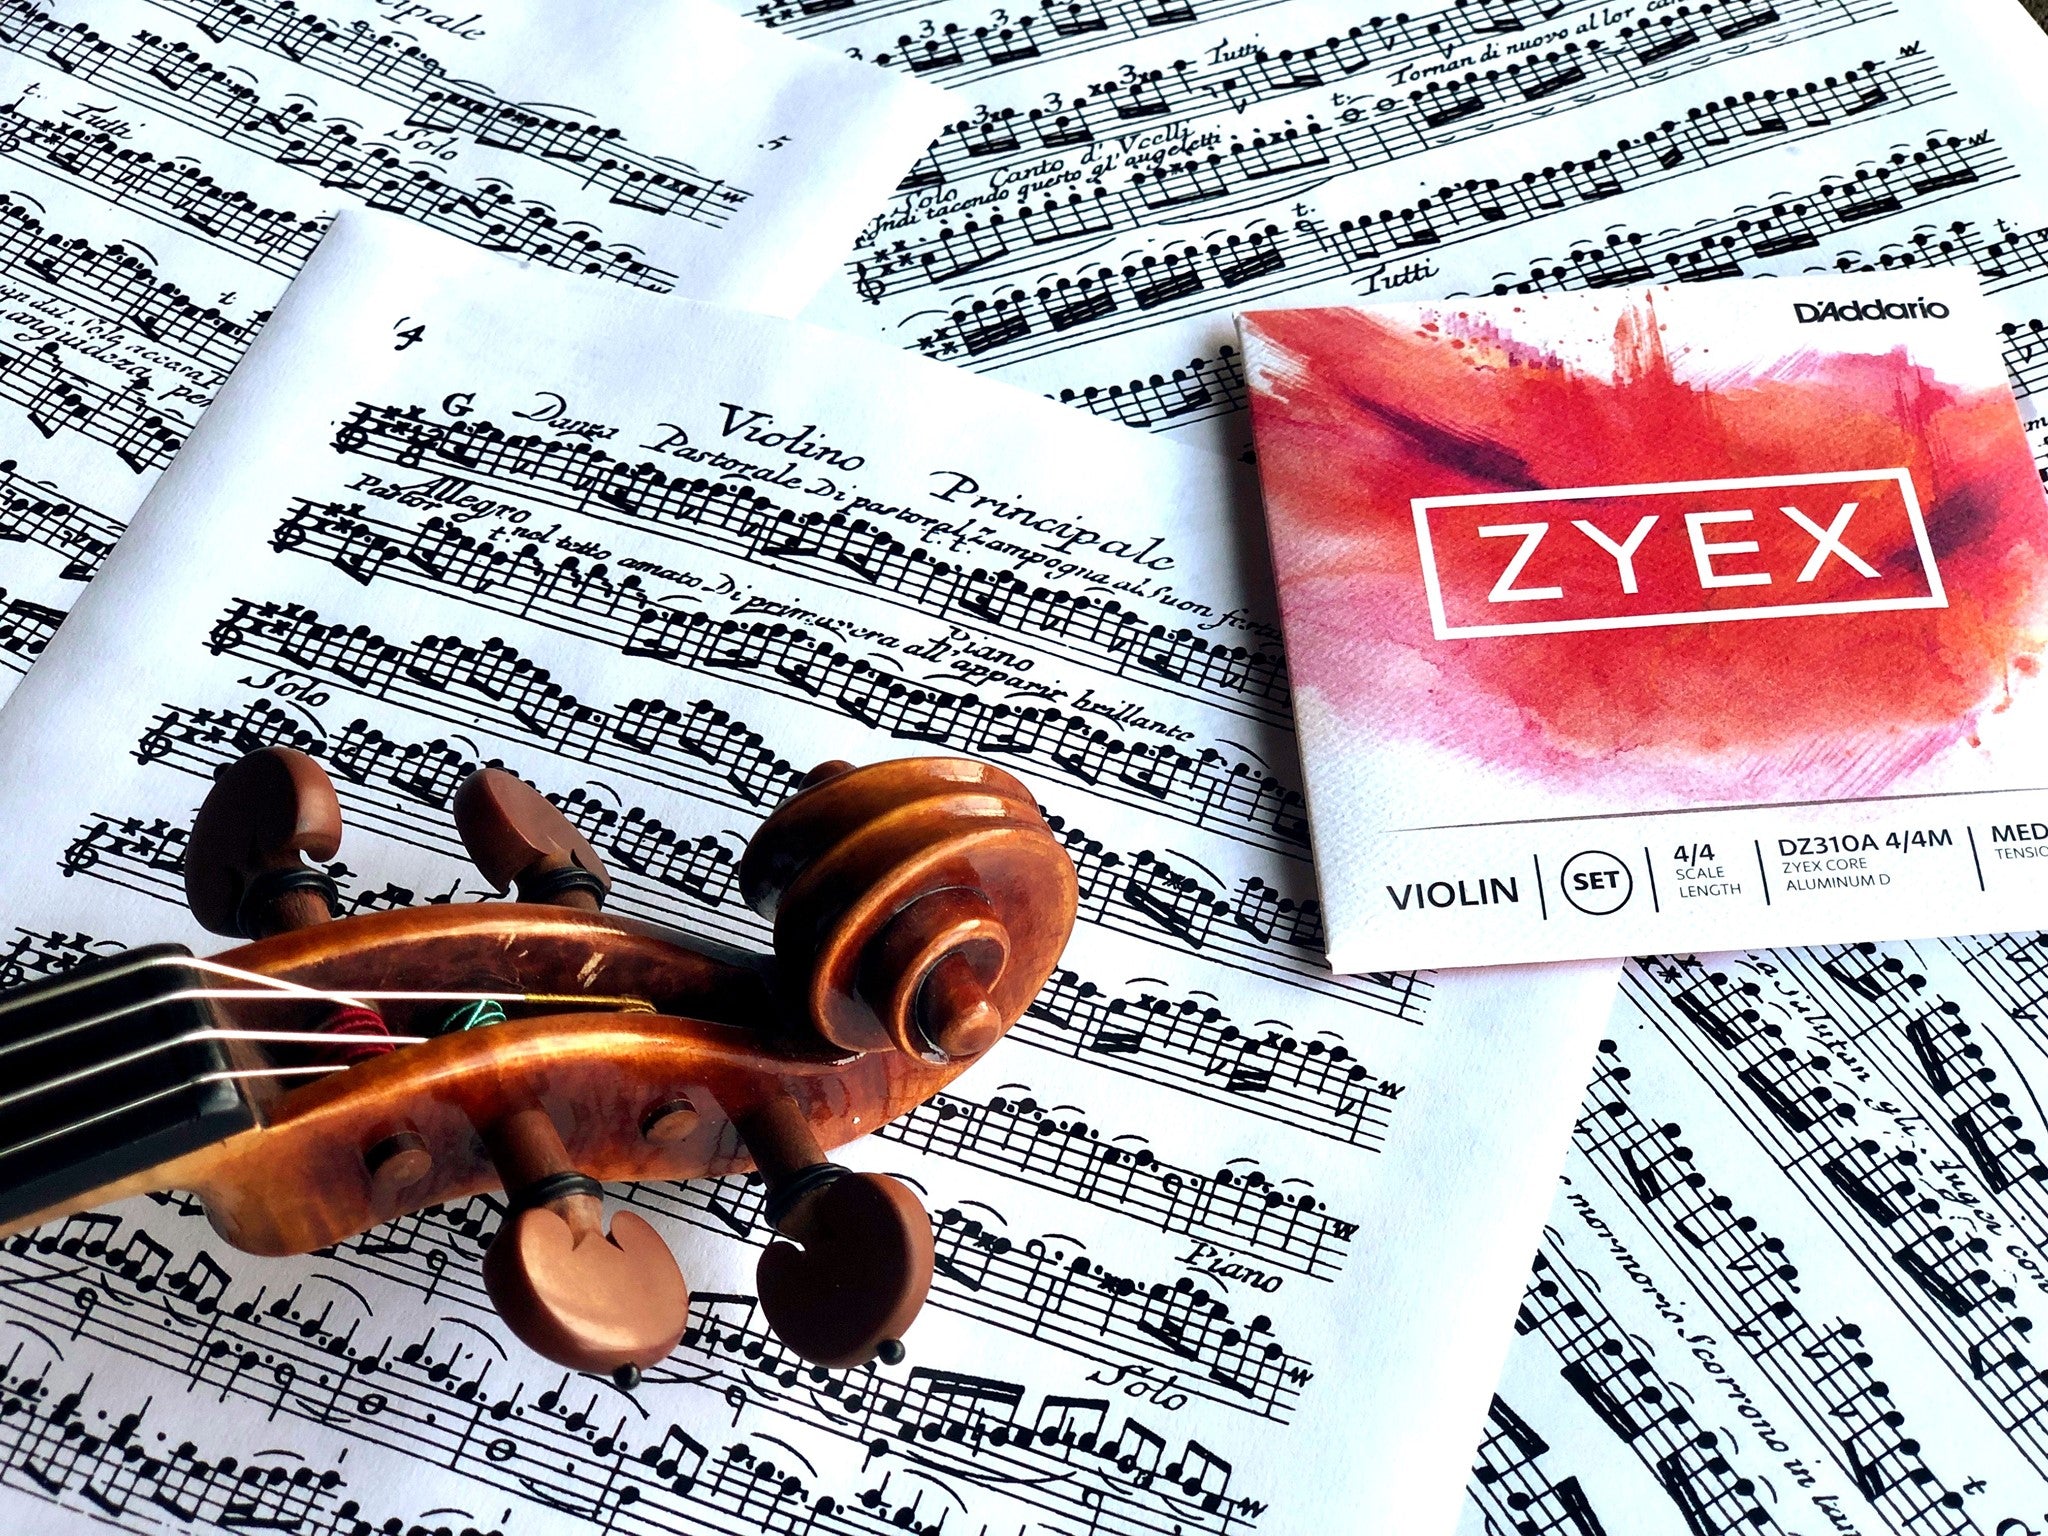 D'Addario Zyex Viola Strings